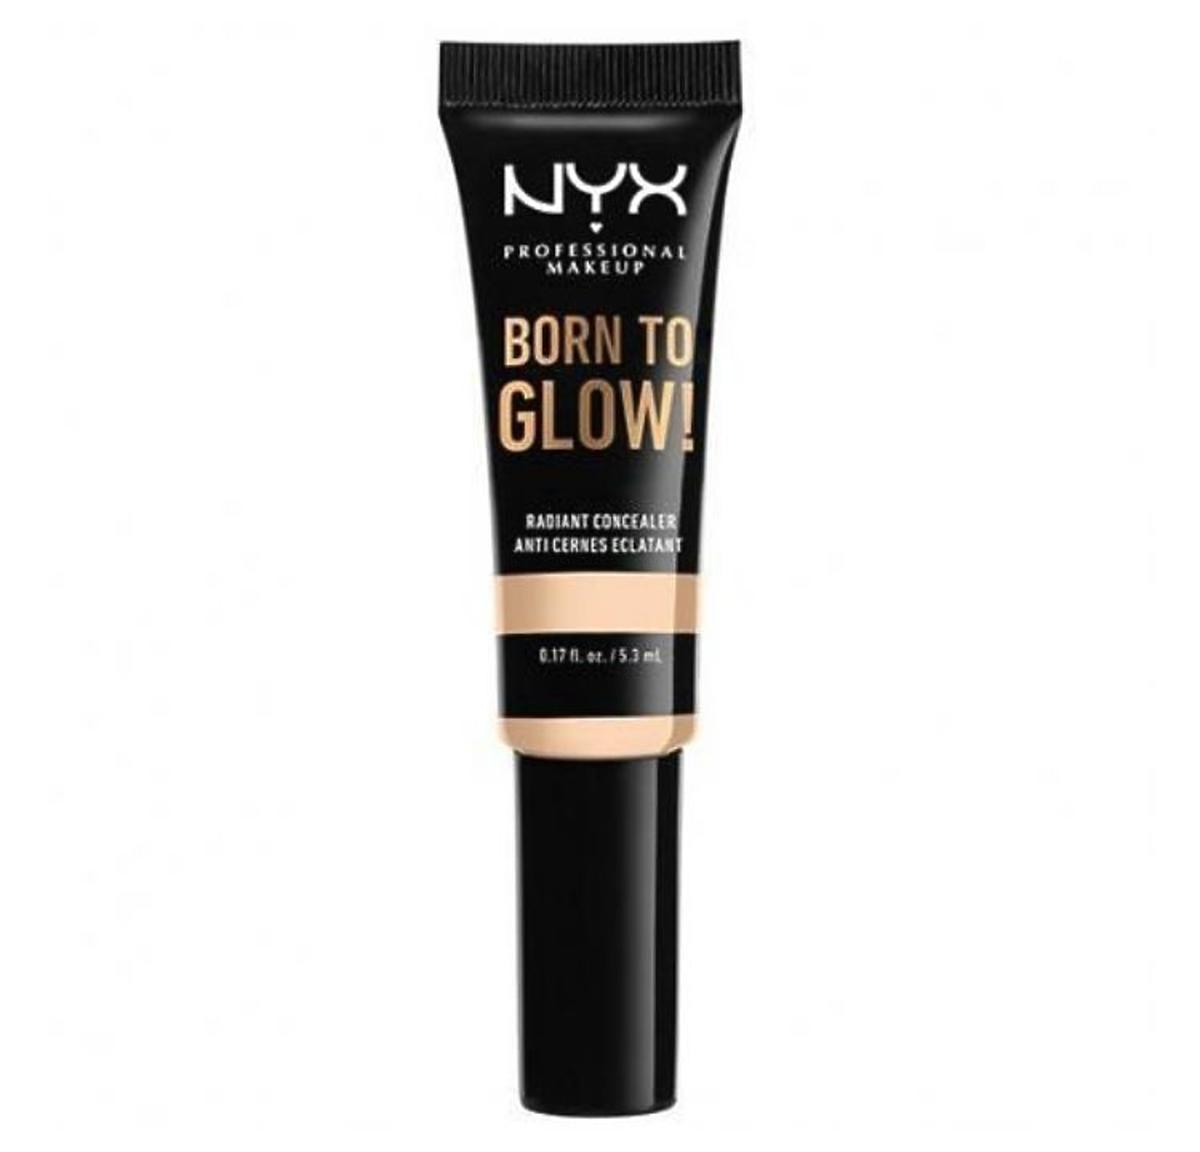 Rozświetlający korektor Born to Glow! NYX Professional Makeup